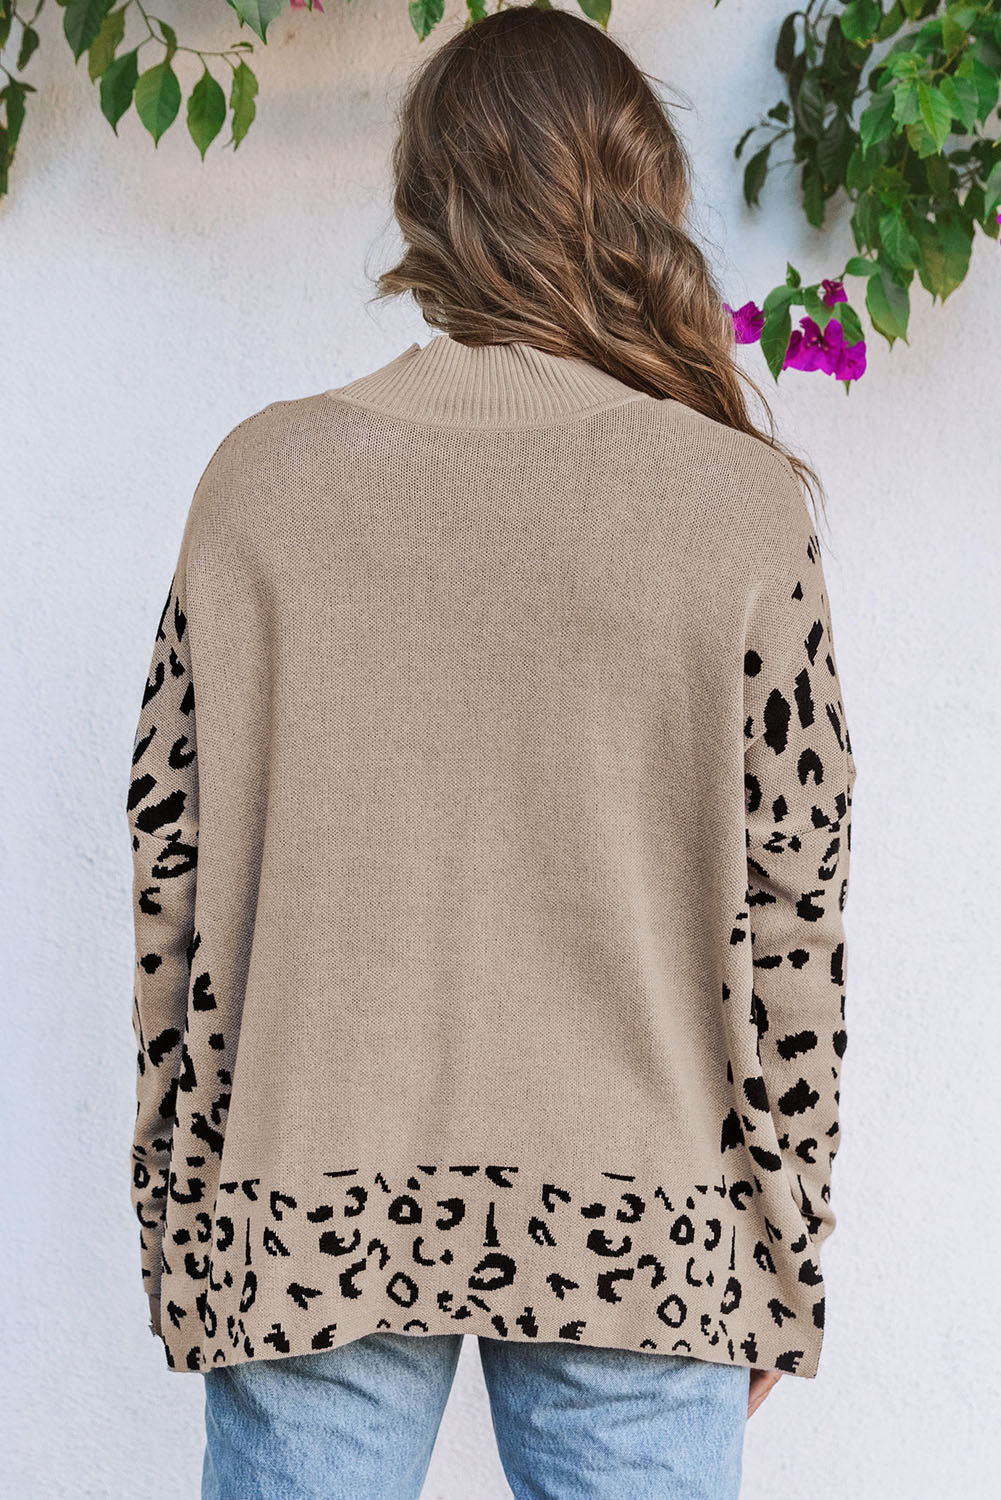 Khakifarbener, hochgeschlossener, seitlich geschlitzter Pullover mit Leopardenmuster